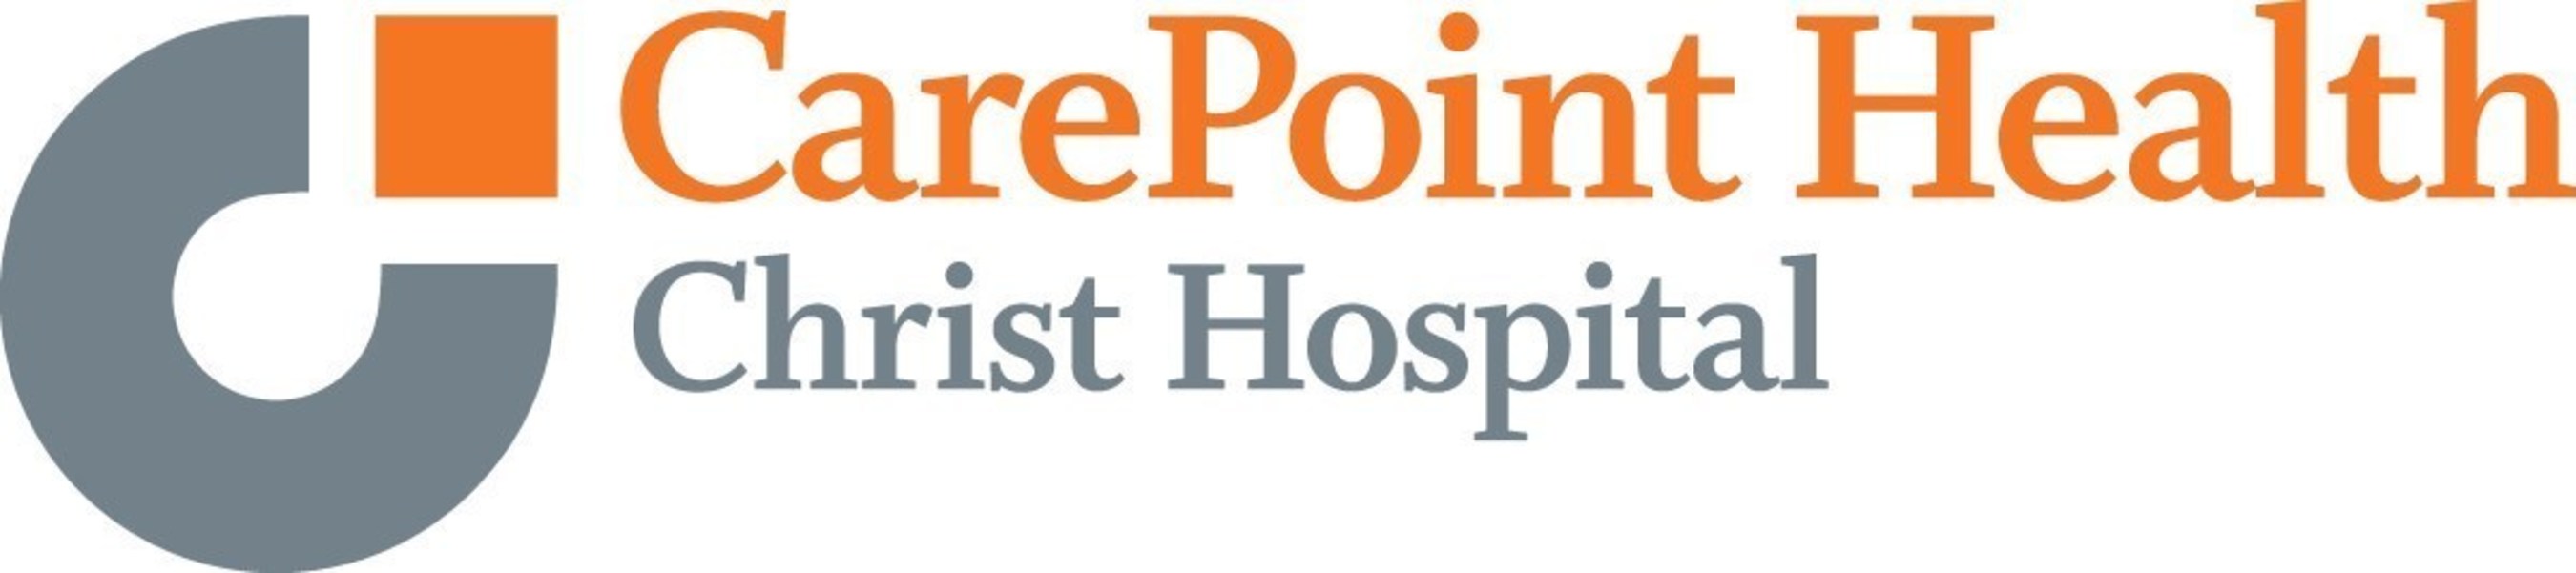 CarePoint Health - Christ Hospital